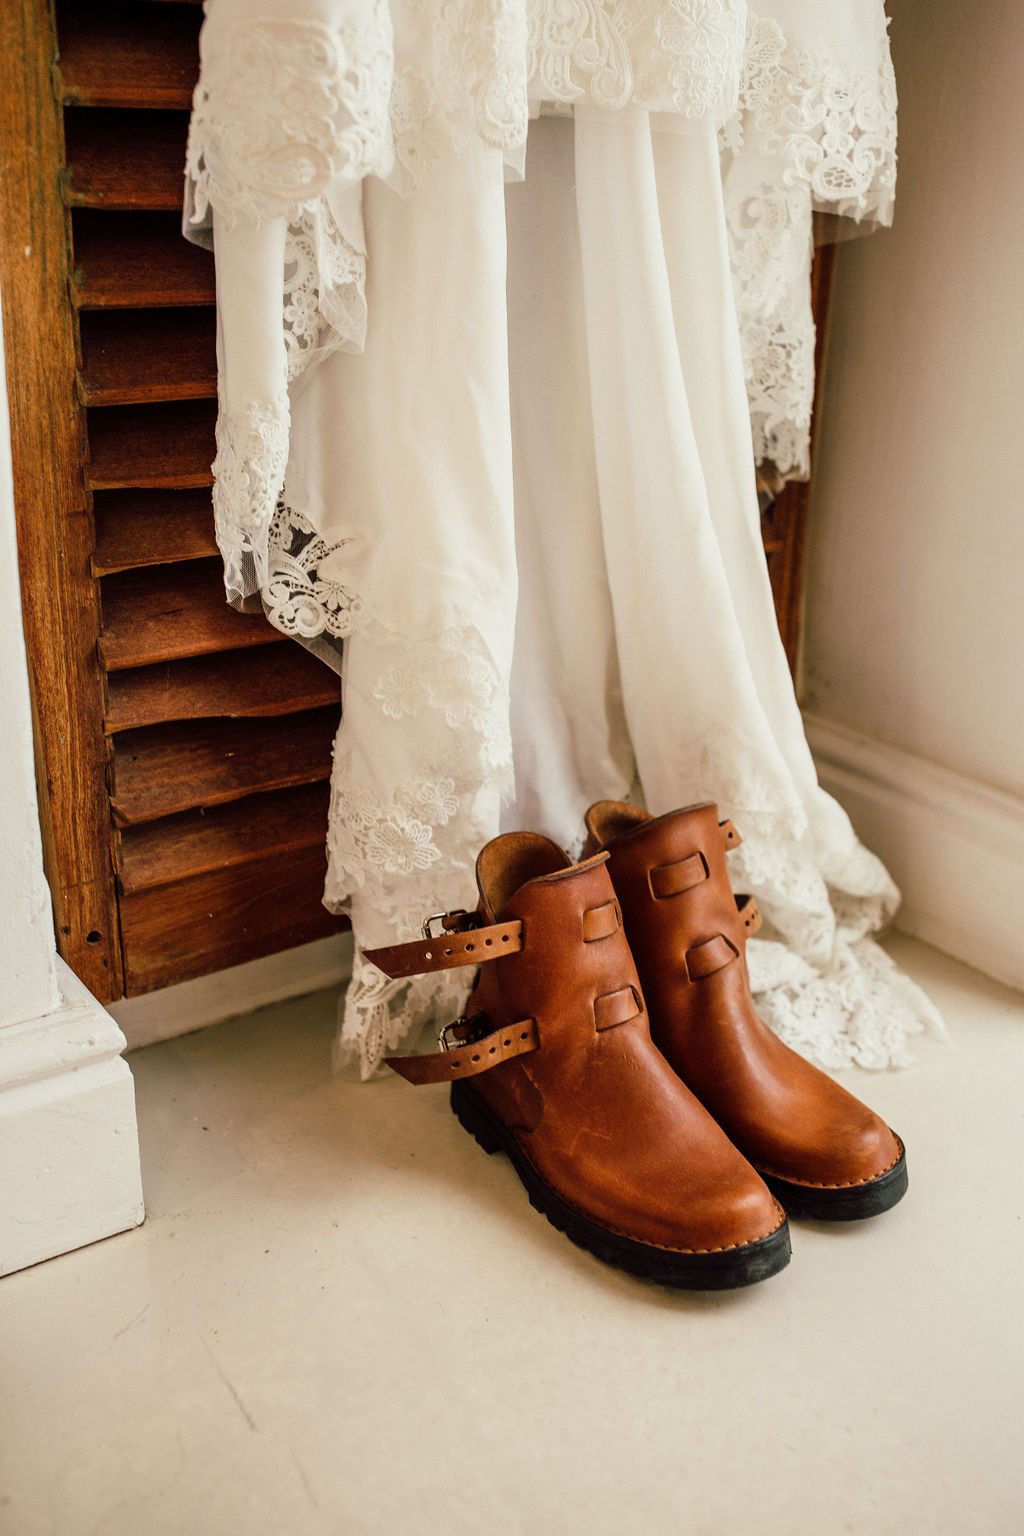 Wedding dress boots